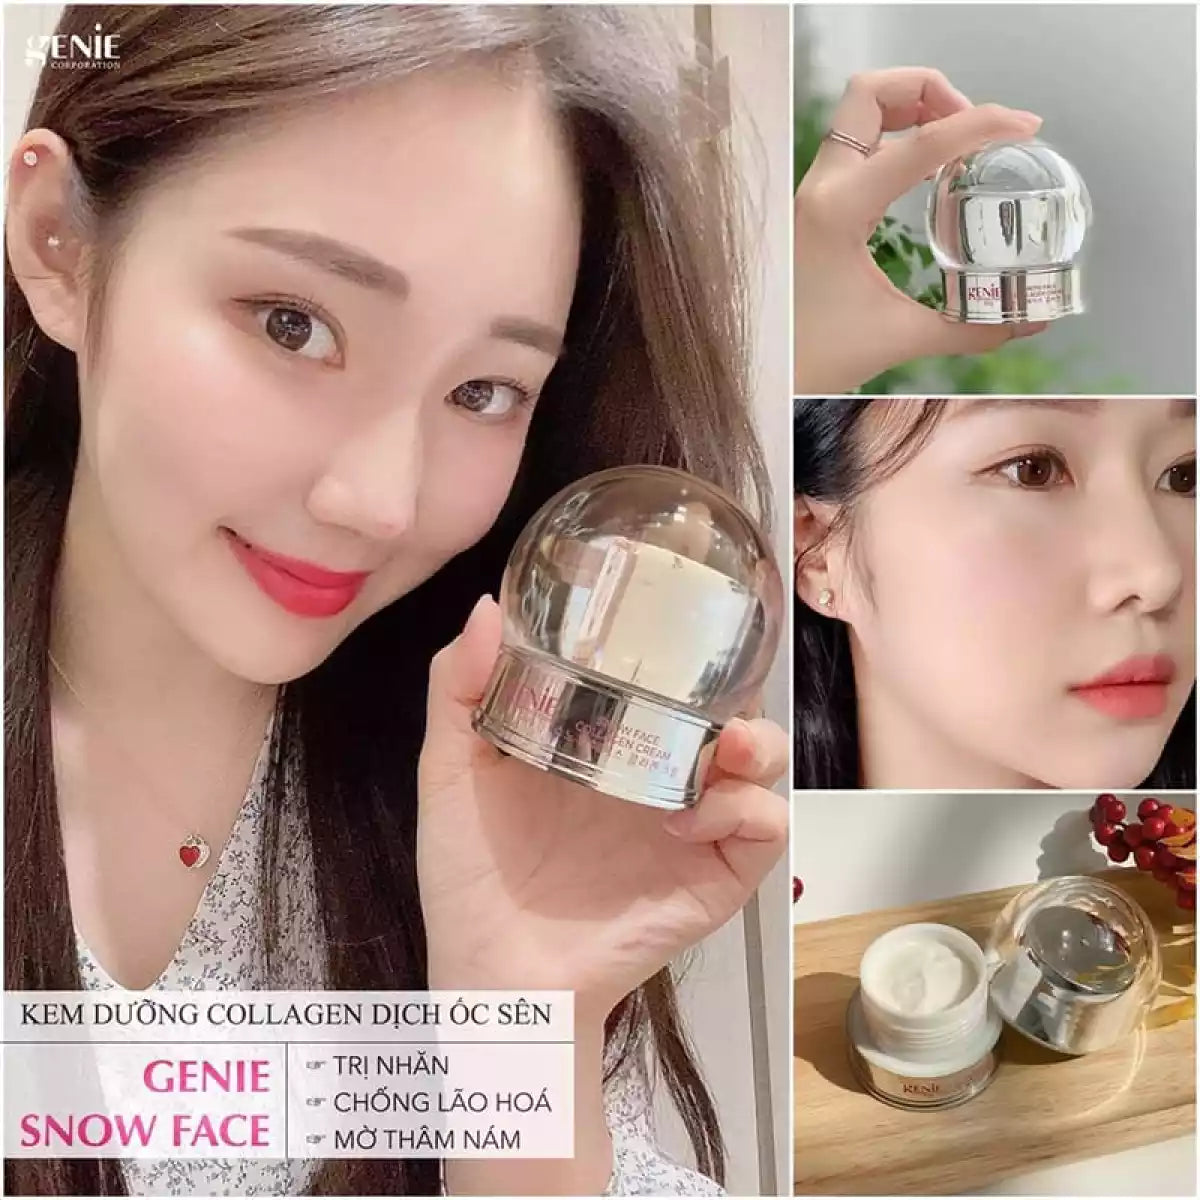 Genie Snow Face Collagen Day Cream